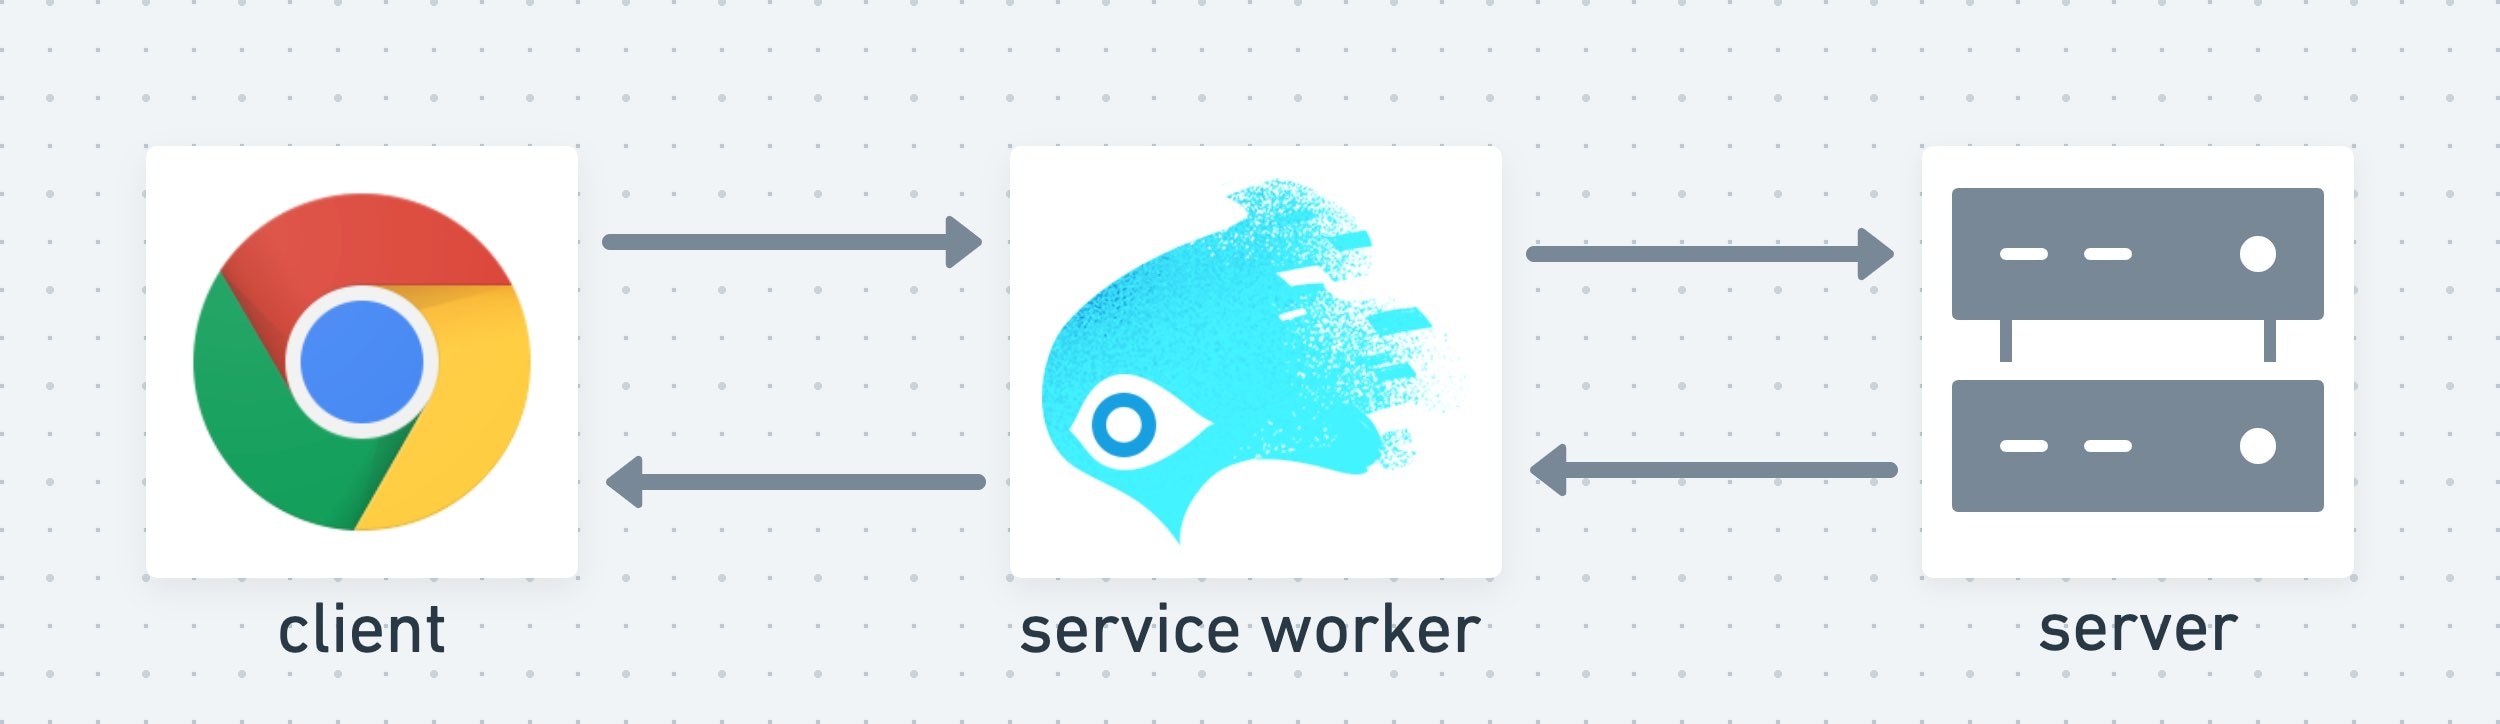 Ein Service Worker fungiert als mittlere Ebene zwischen Client und Server